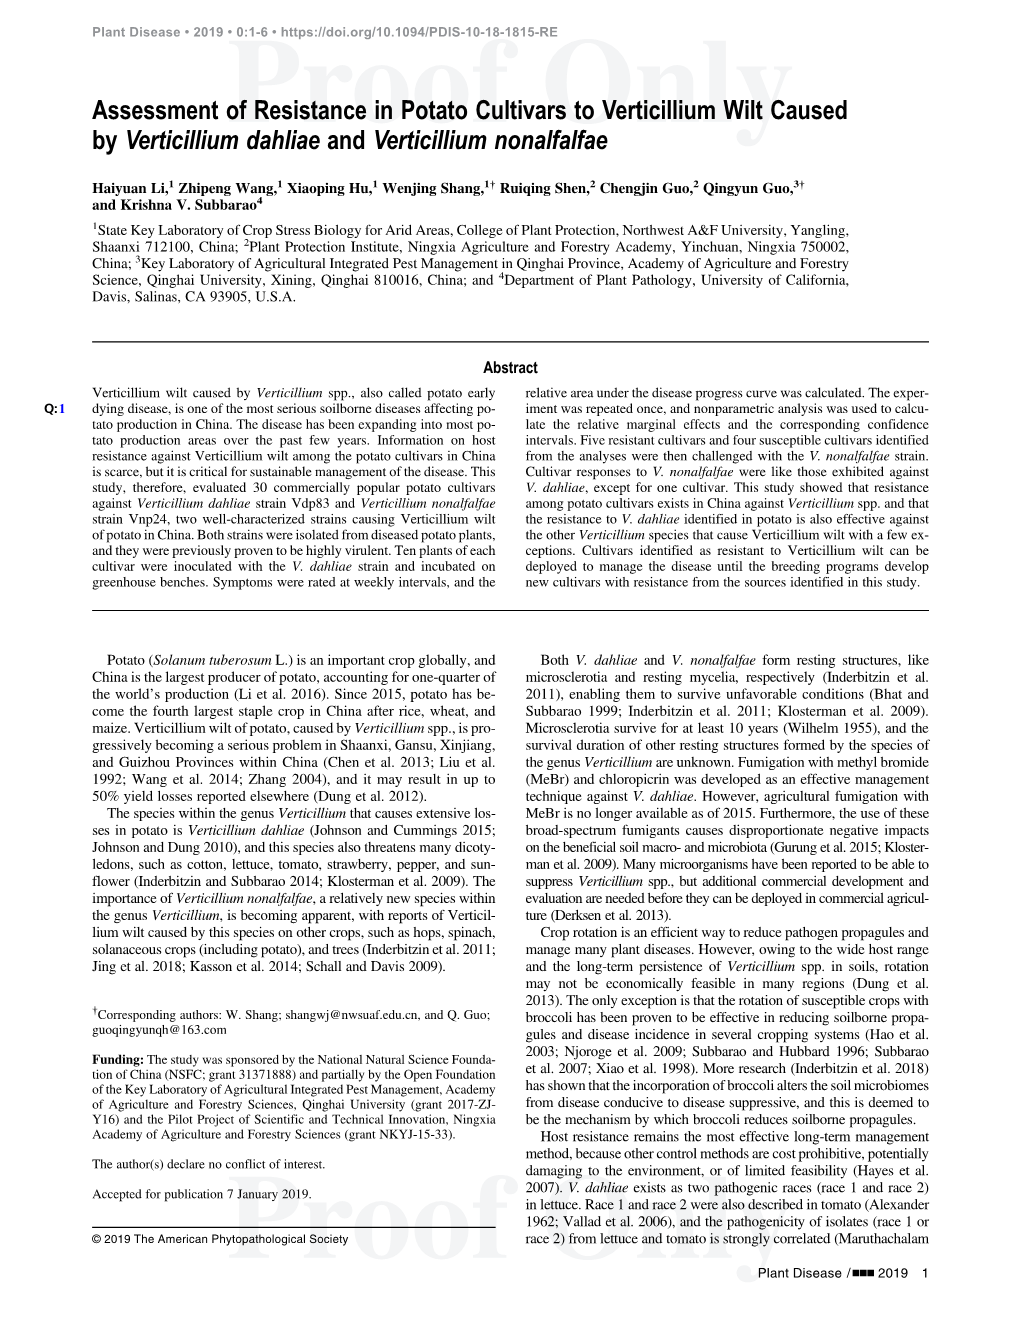 Assessment of Resistance in Potato Cultivars to Verticillium Wilt Caused by Verticillium Dahliae and Verticillium Nonalfalfae